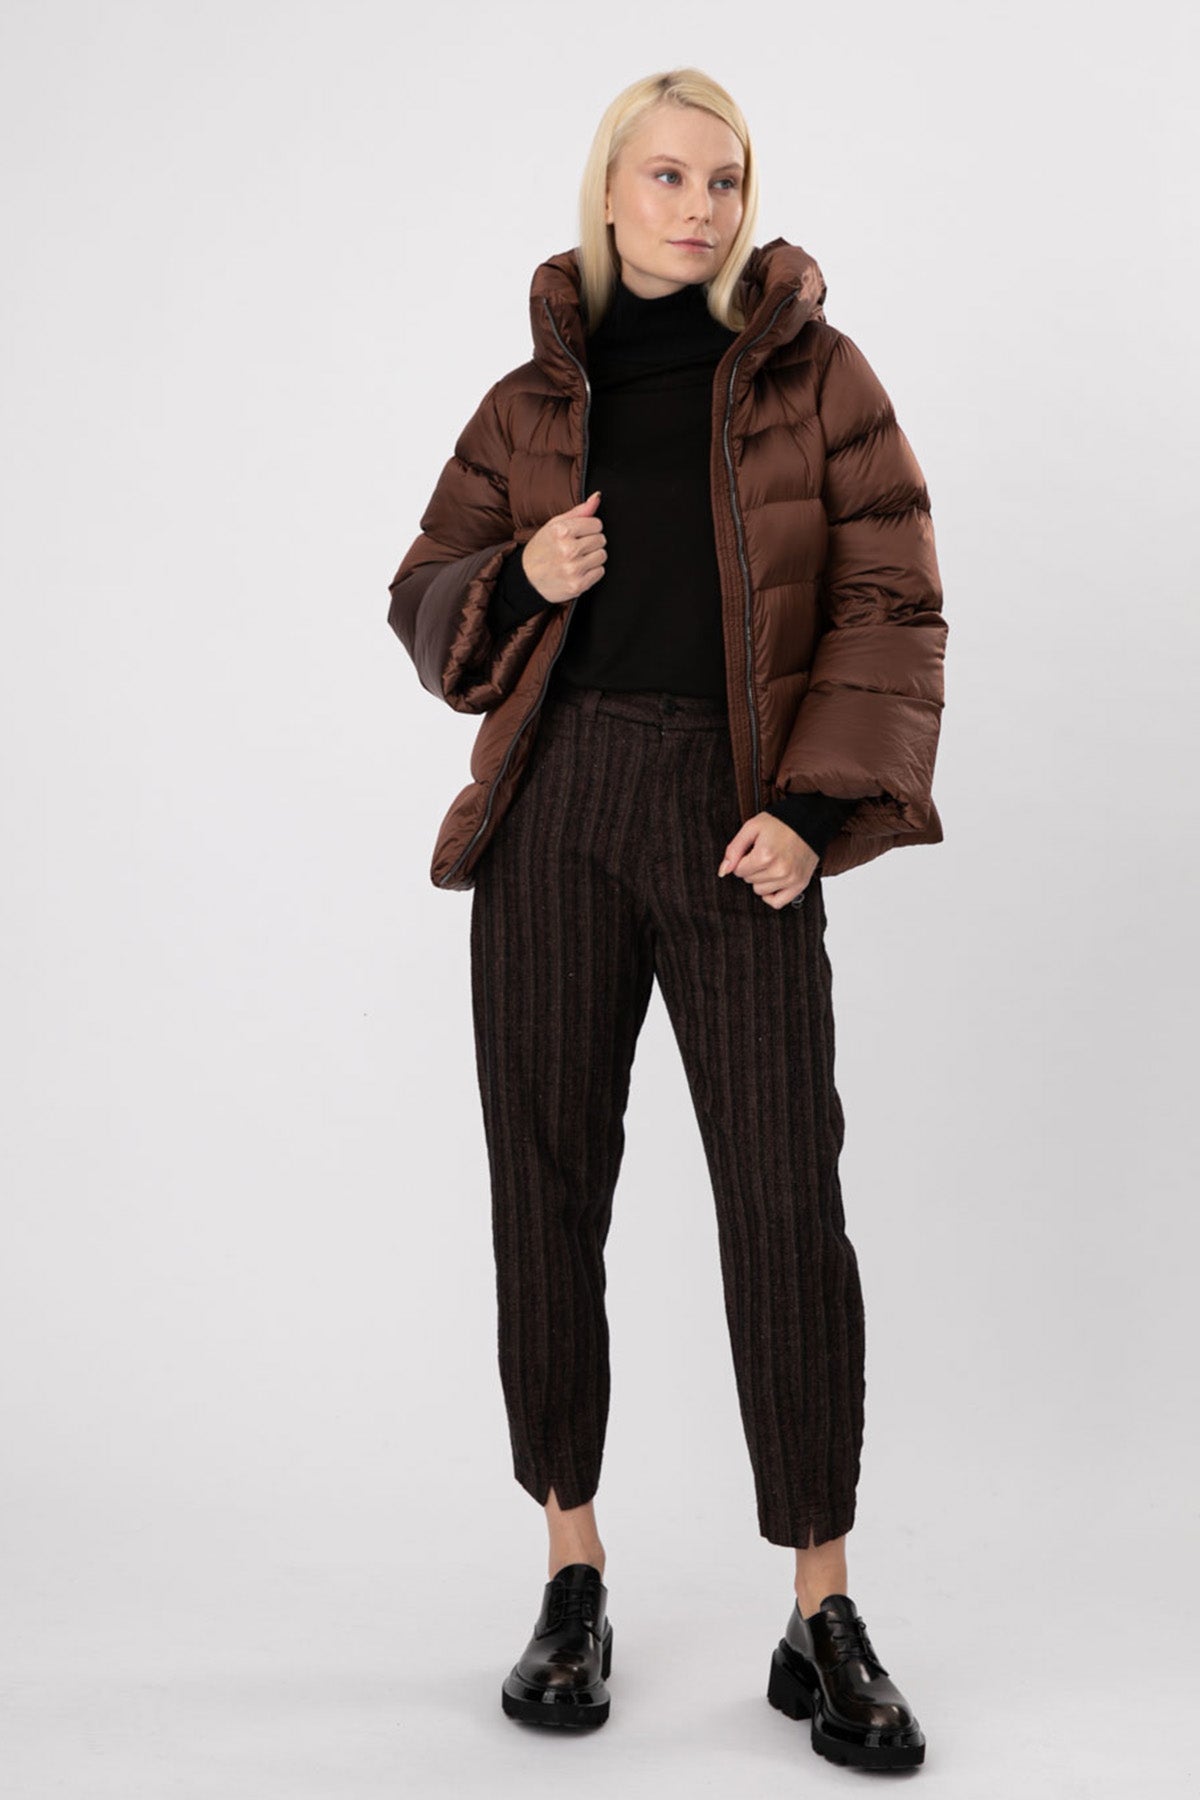 Transit Çizgili Ketenli Crop Pantolon-Libas Trendy Fashion Store